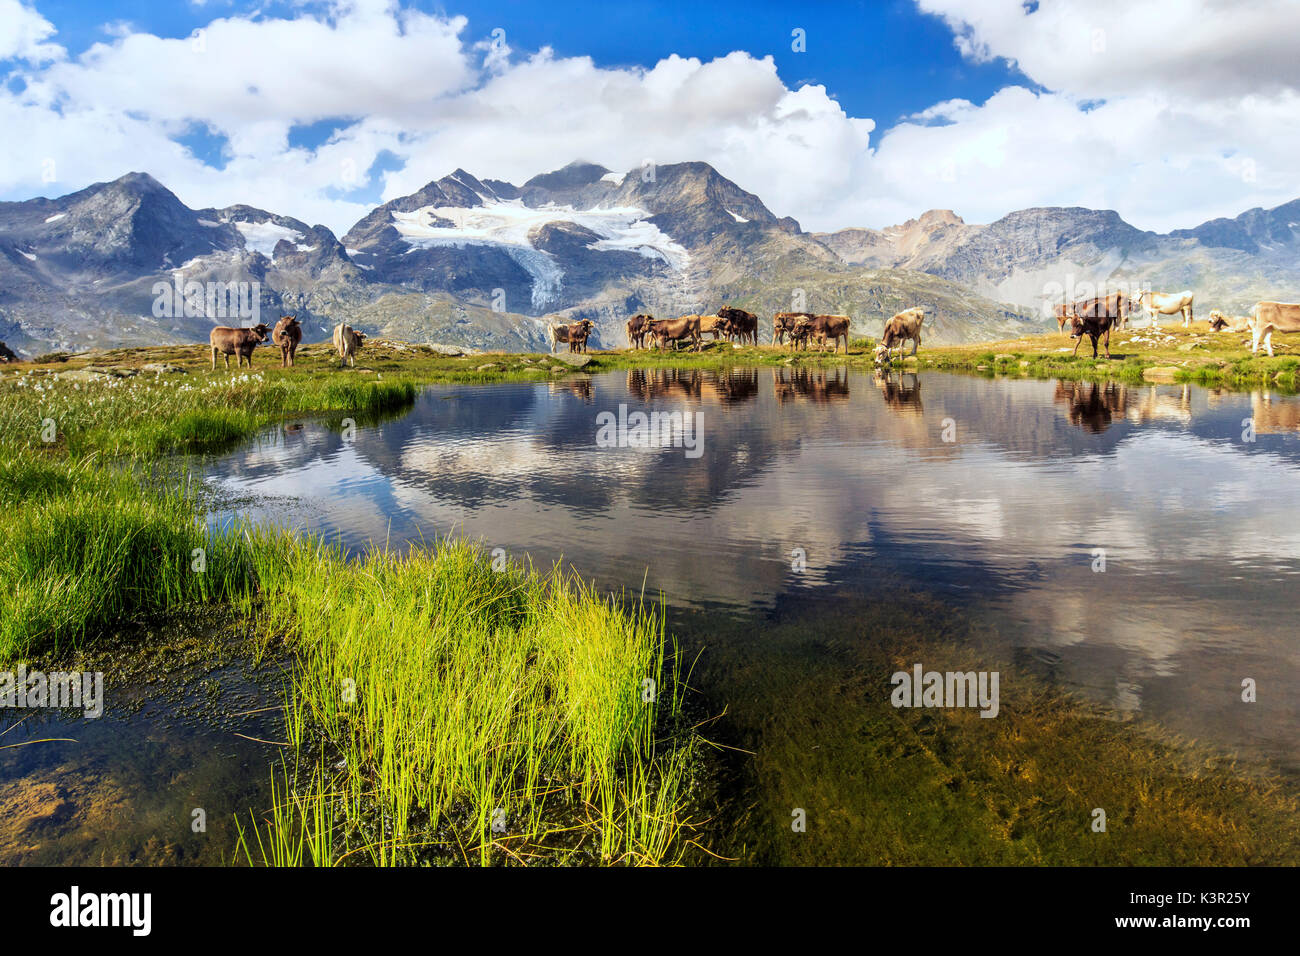 Kühe am Ufer des Sees hohe Berge und Wolken sind reflektiert Bugliet Tal Bernina Engadin Schweiz Europa Stockfoto